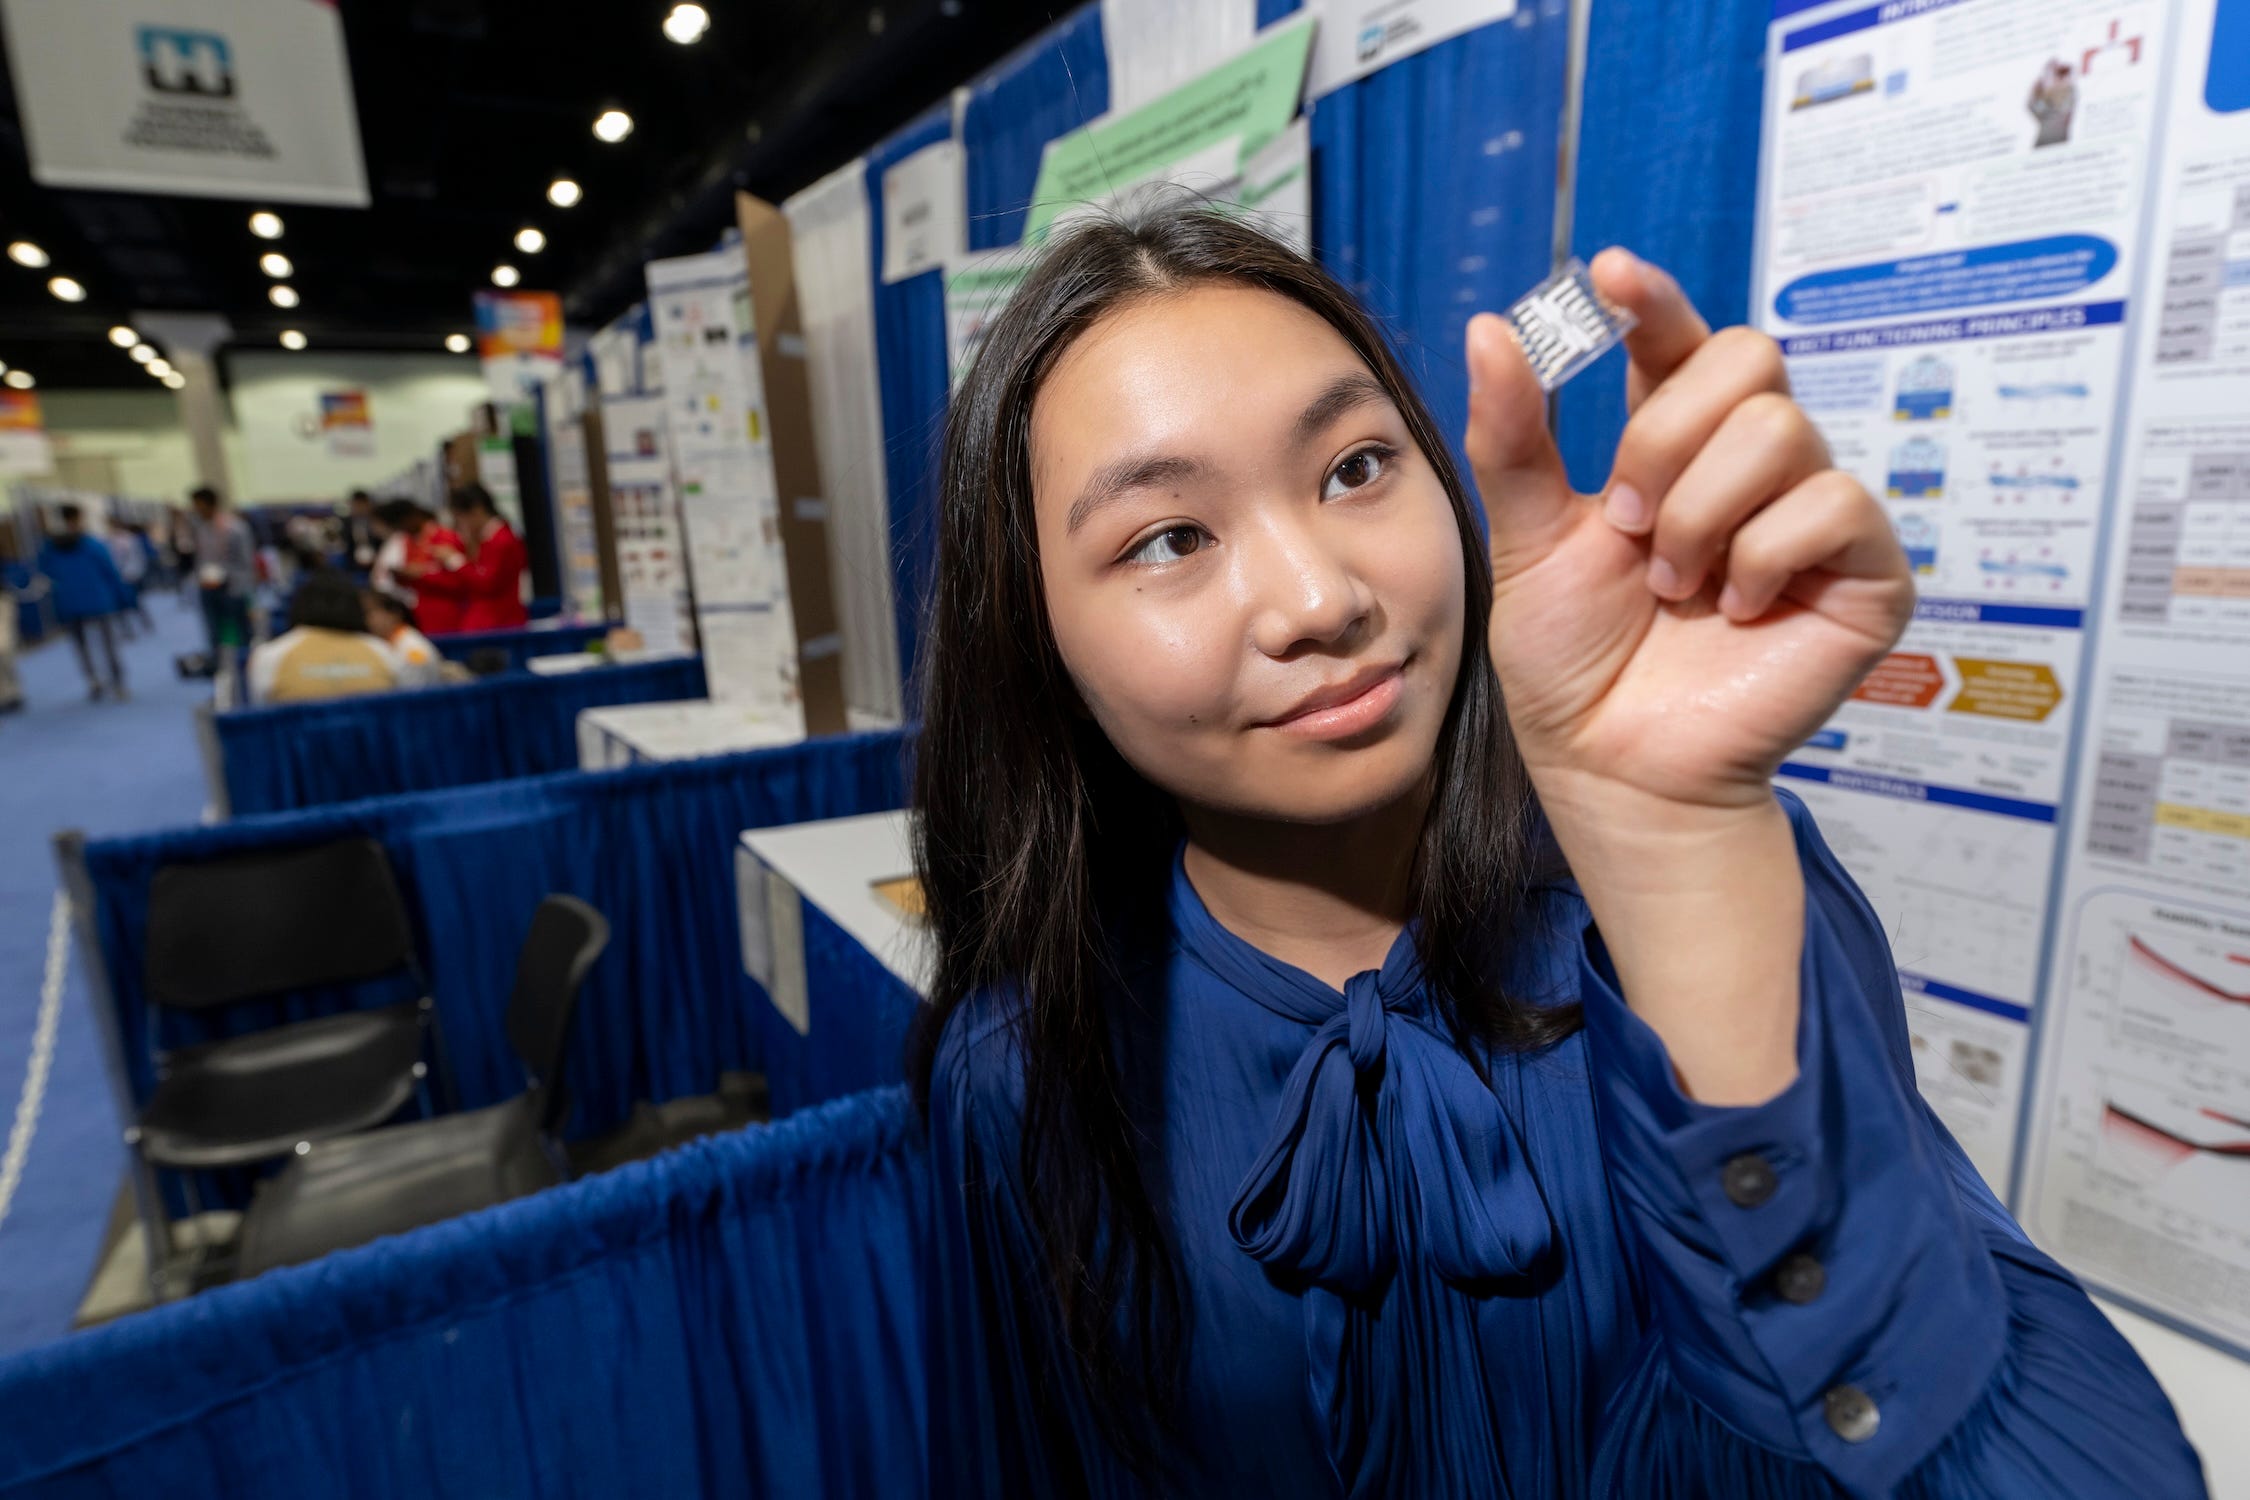 Ein Mädchen in blauem Hemd und langen dunklen Haaren hält ein kleines OETC-Gerät in der Hand, das wie ein kleines klares Quadrat mit weißer Innenseite aussieht